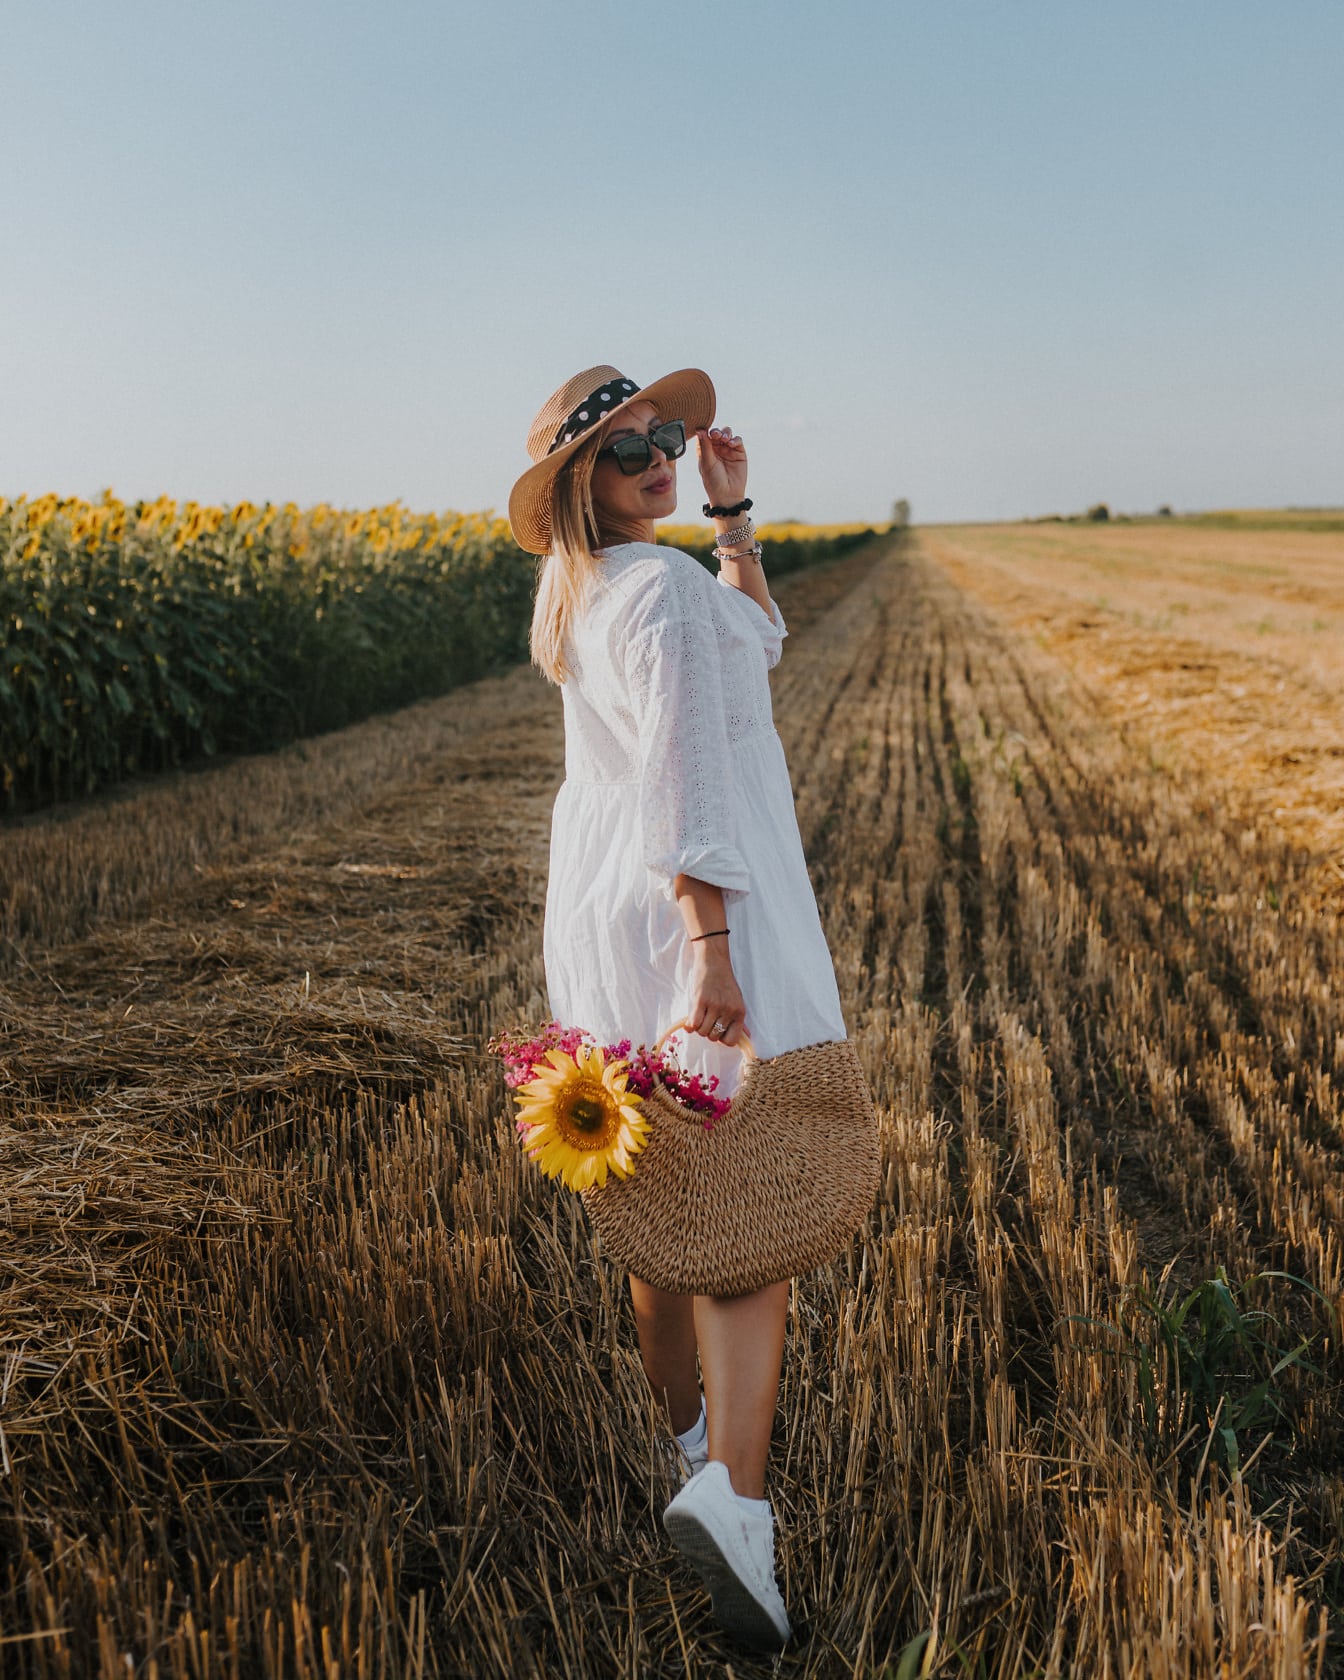 Gadis koboi pedesaan yang indah dengan topi jerami dan keranjang anyaman di ladang gandum